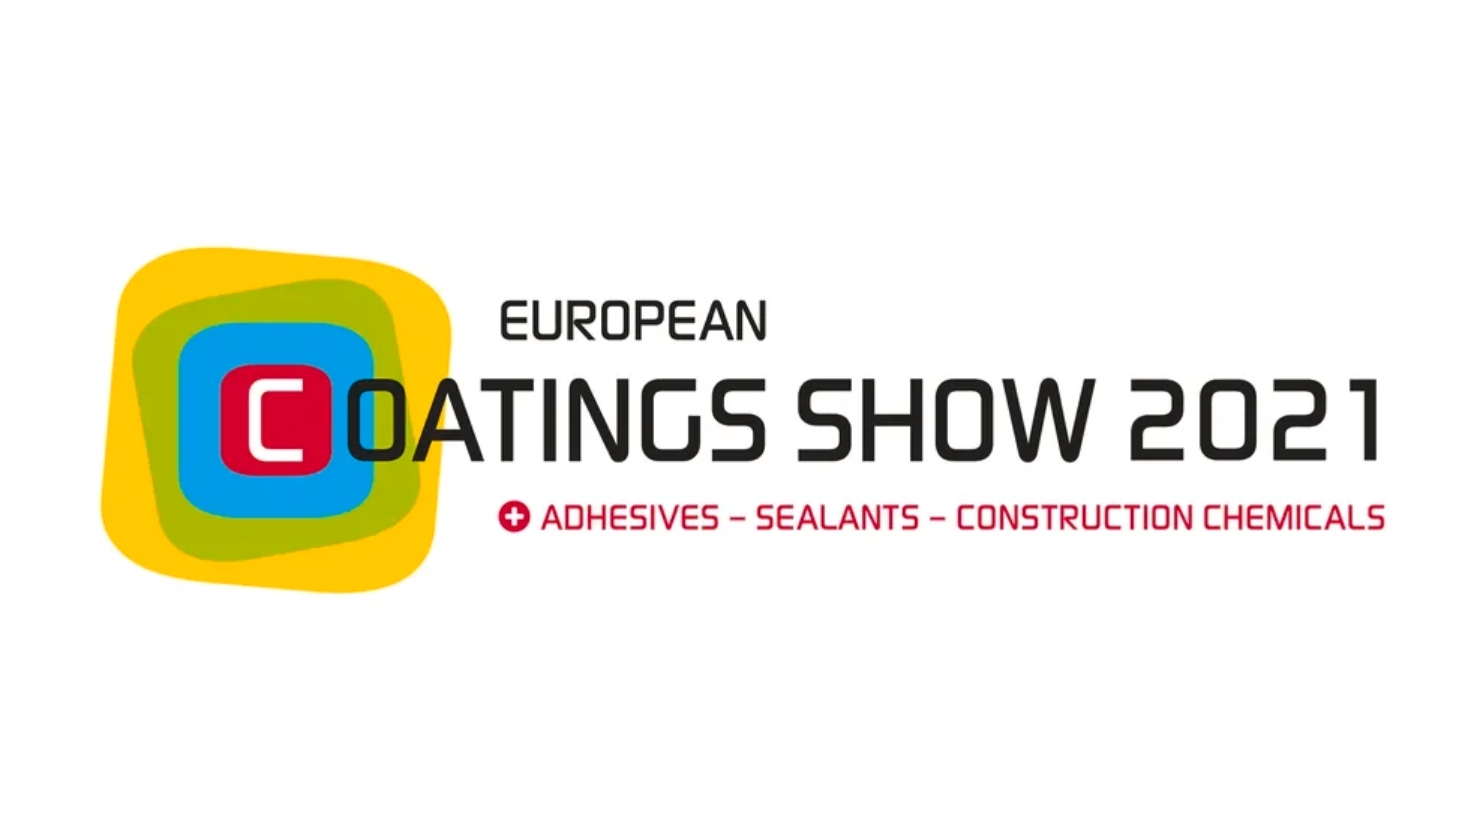 Weichen für European Coatings Show 2021 im September gestellt